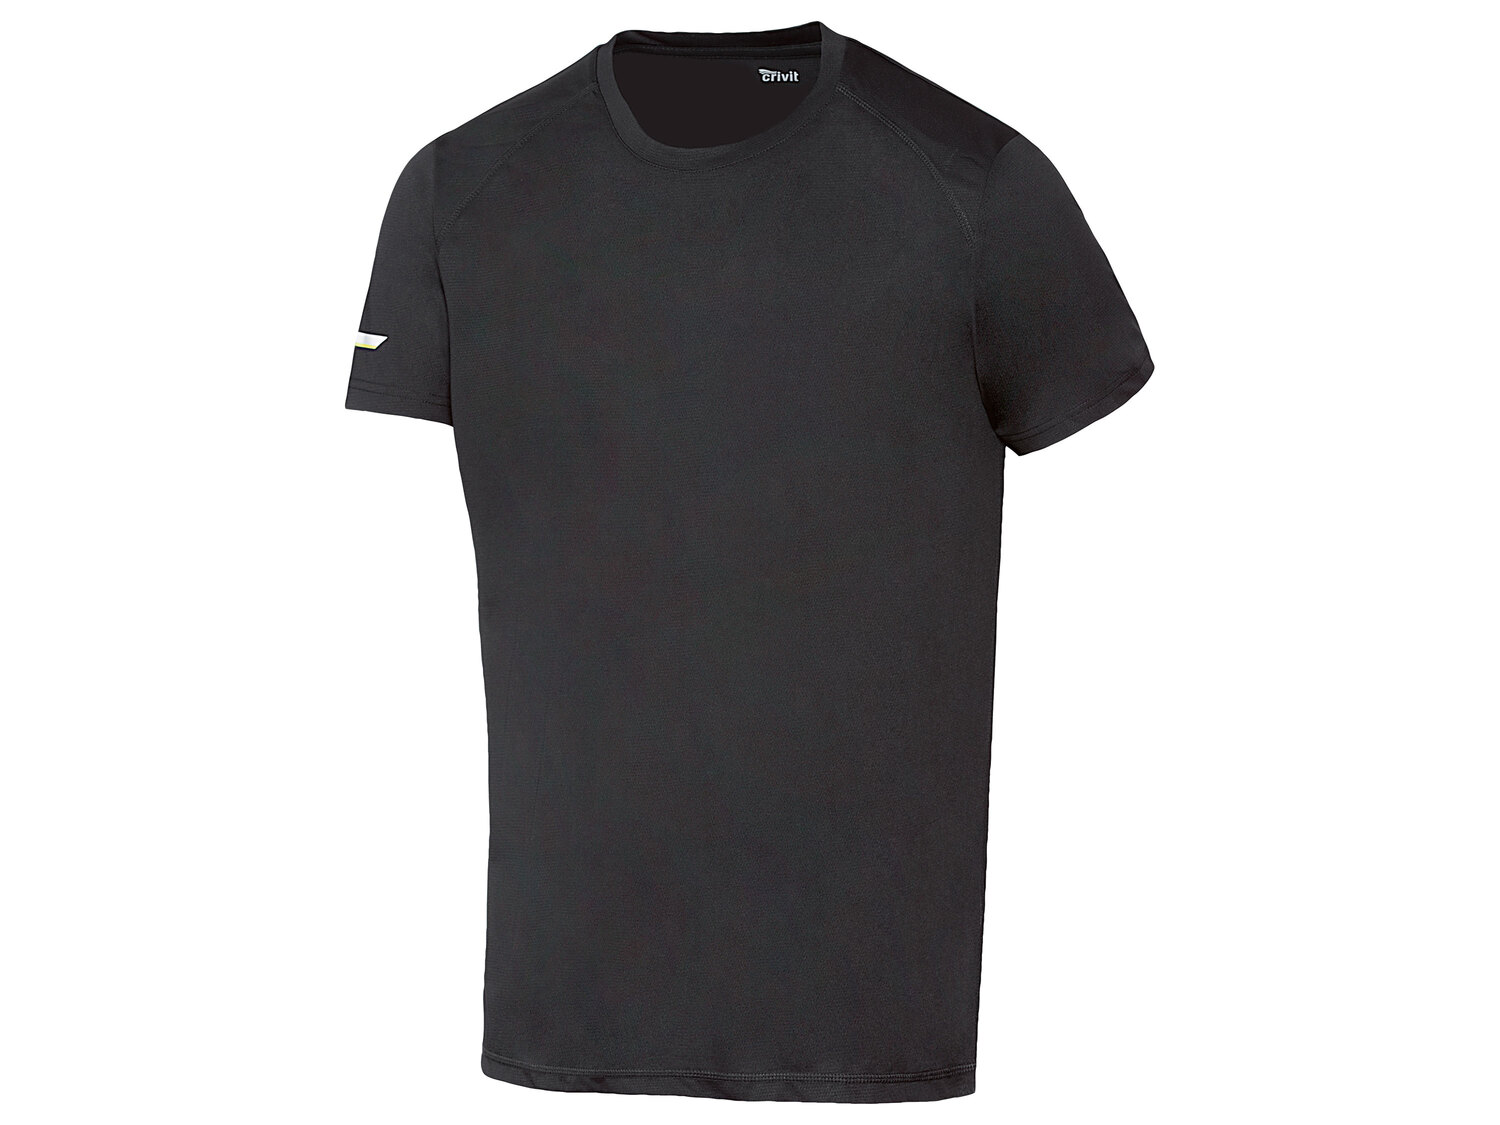 T-shirt technique , le prix 4.99 € 
- Du S au XL selon modèle
- Ex. 100 % polyester
- ...